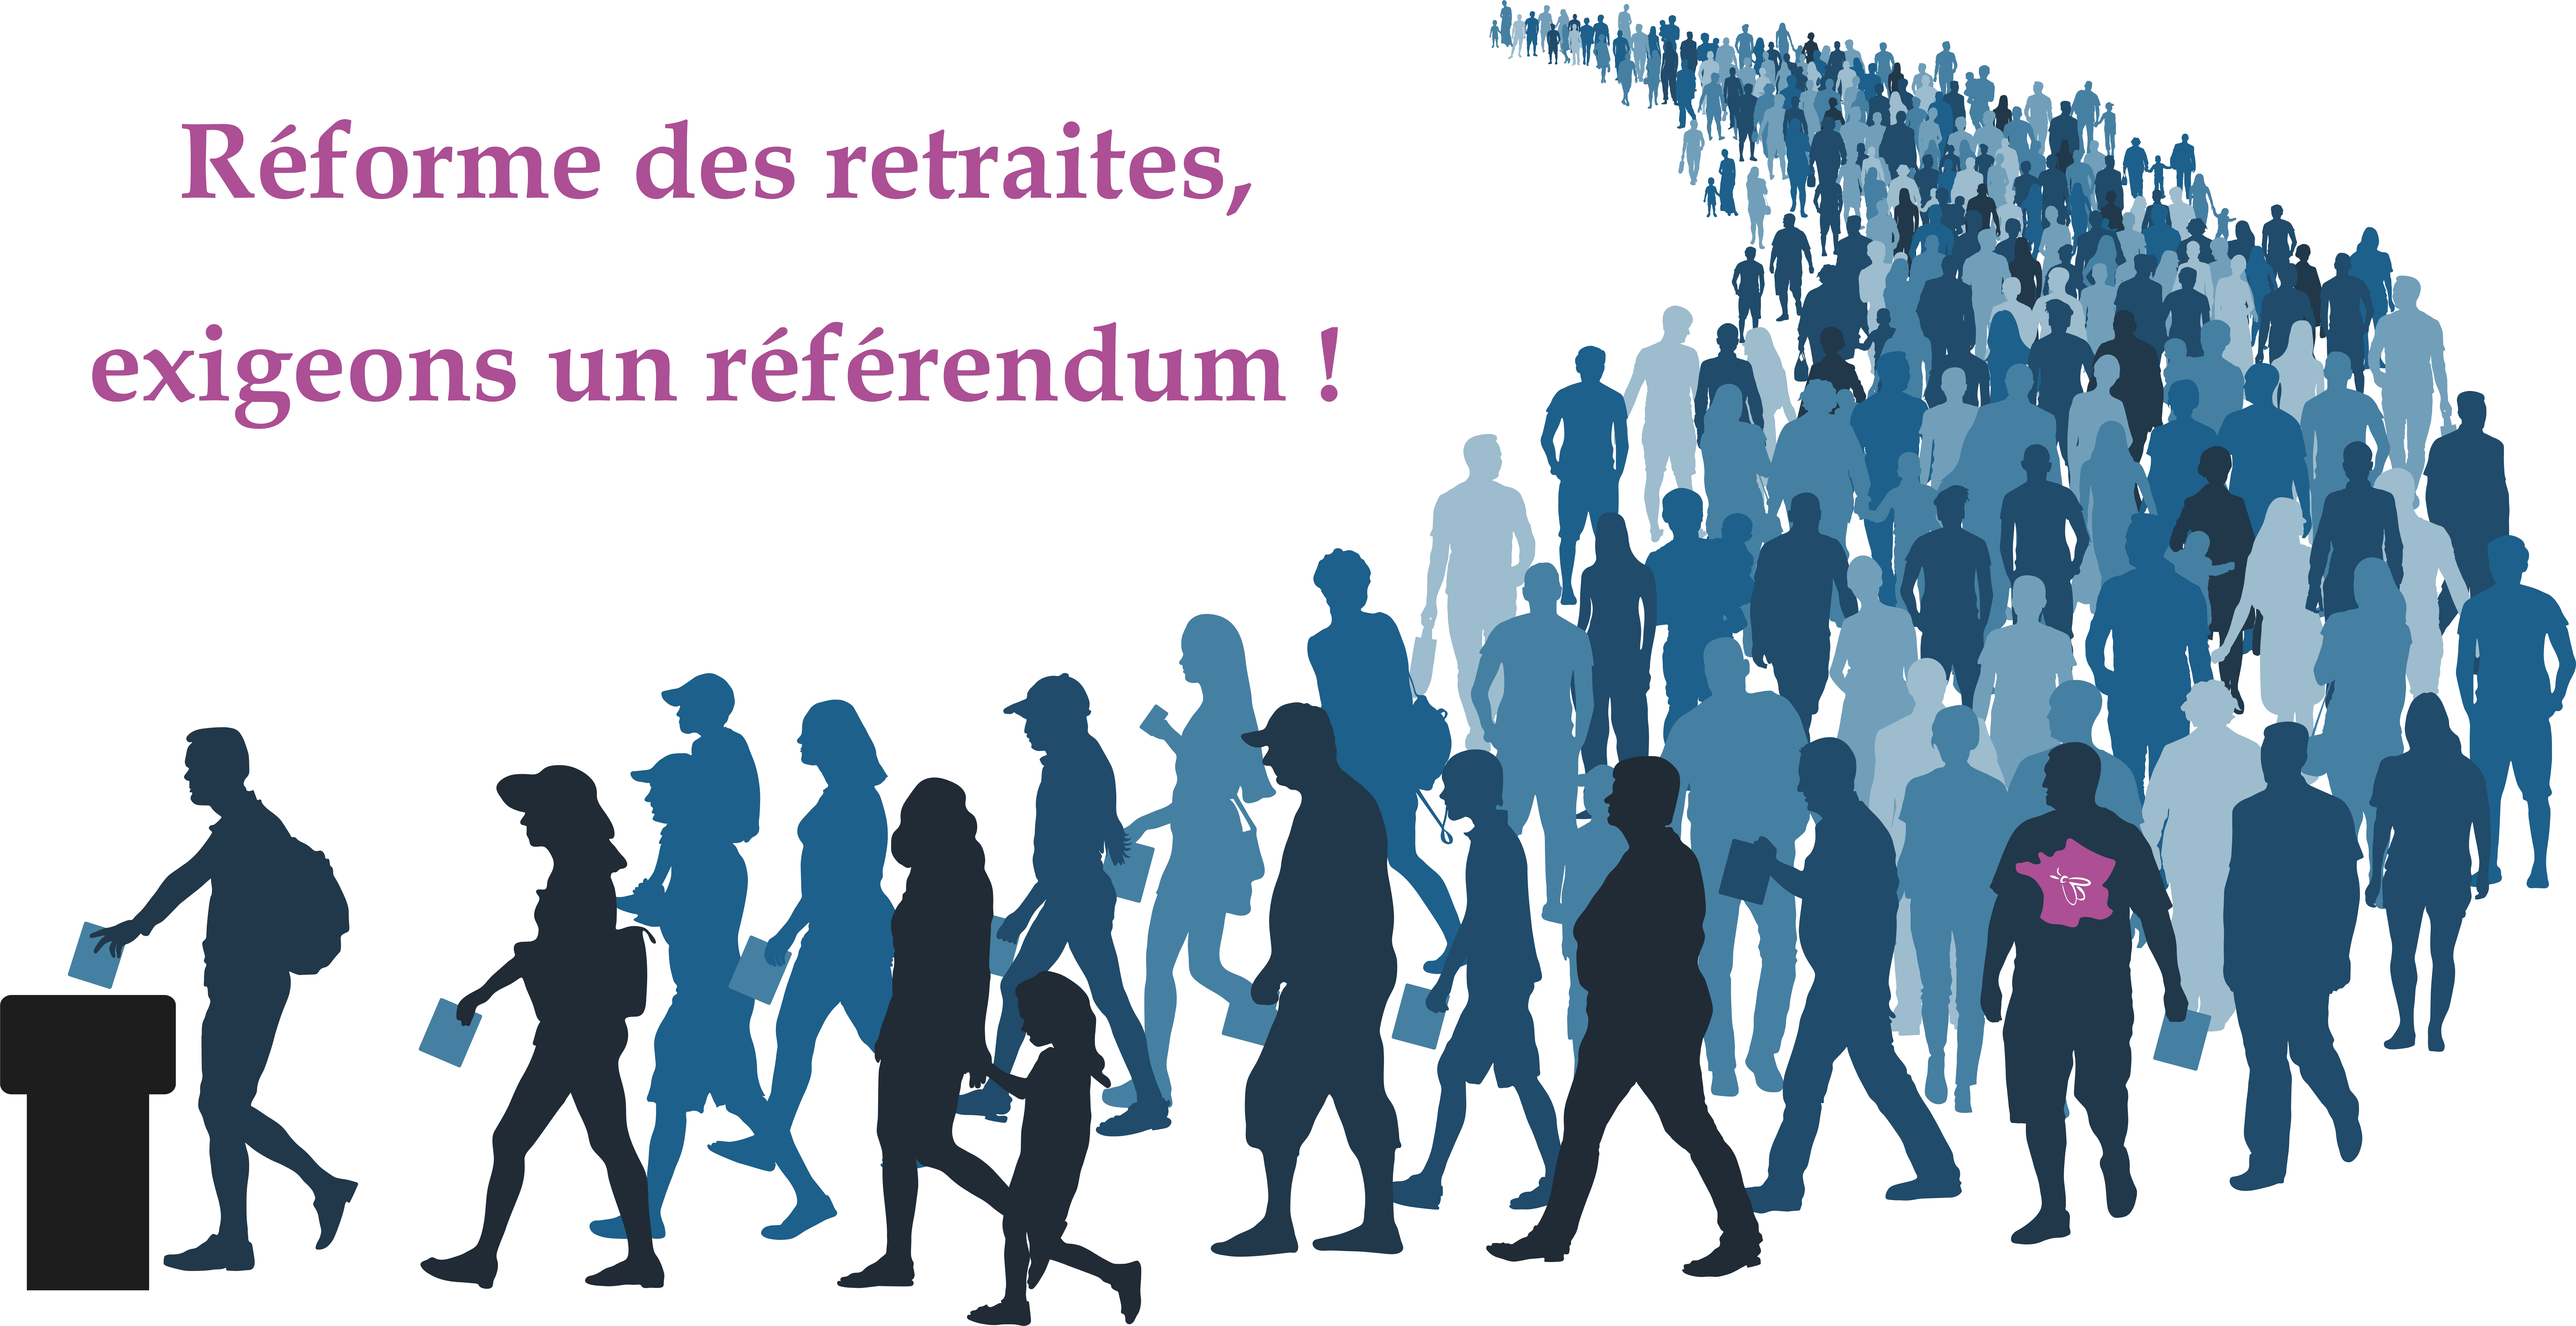 Réforme des retraites, il faut un référendum.